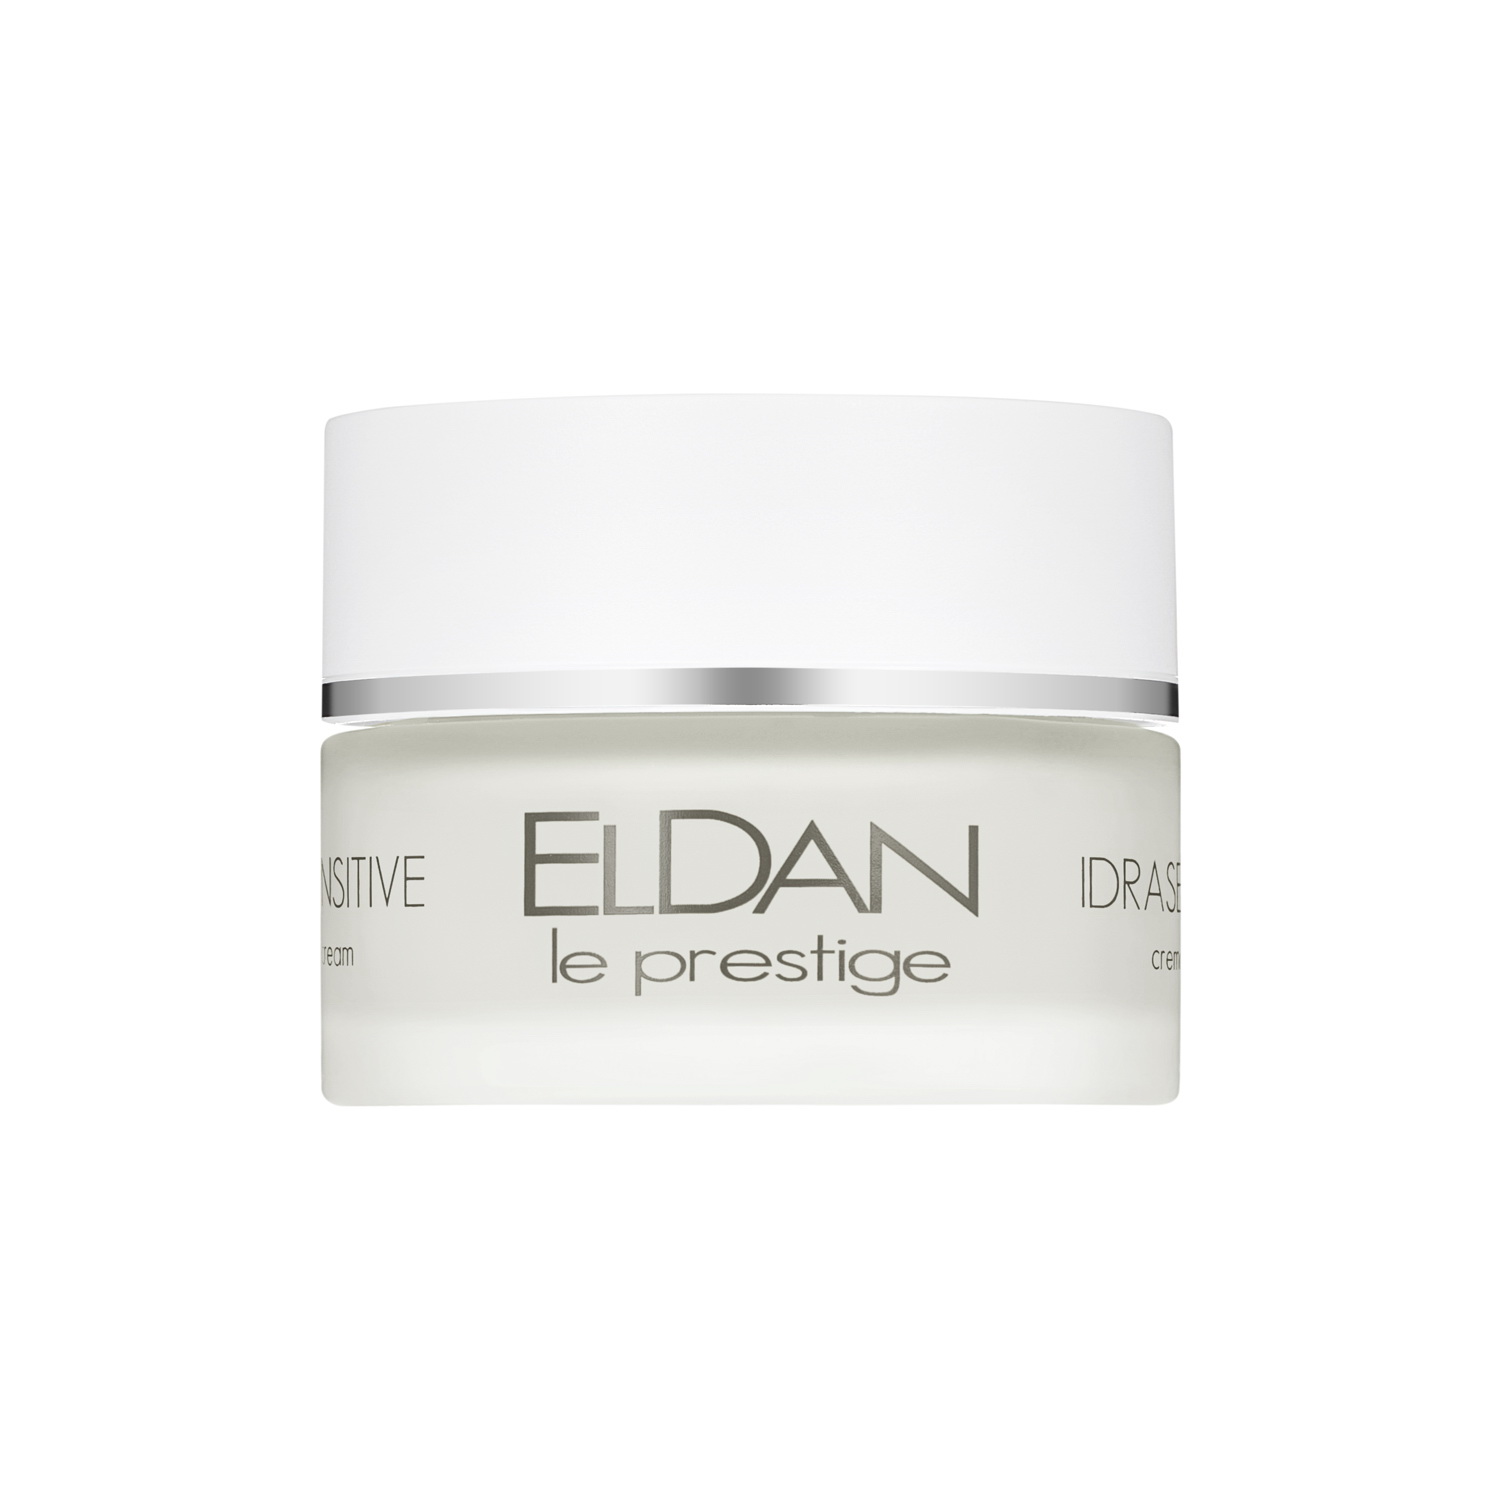 Крем для лица ELDAN Cosmetics Idrasensitive 24H Cream для чувствительной кожи, 50 мл eldan средство для упругости и объема губ premium 15 мл